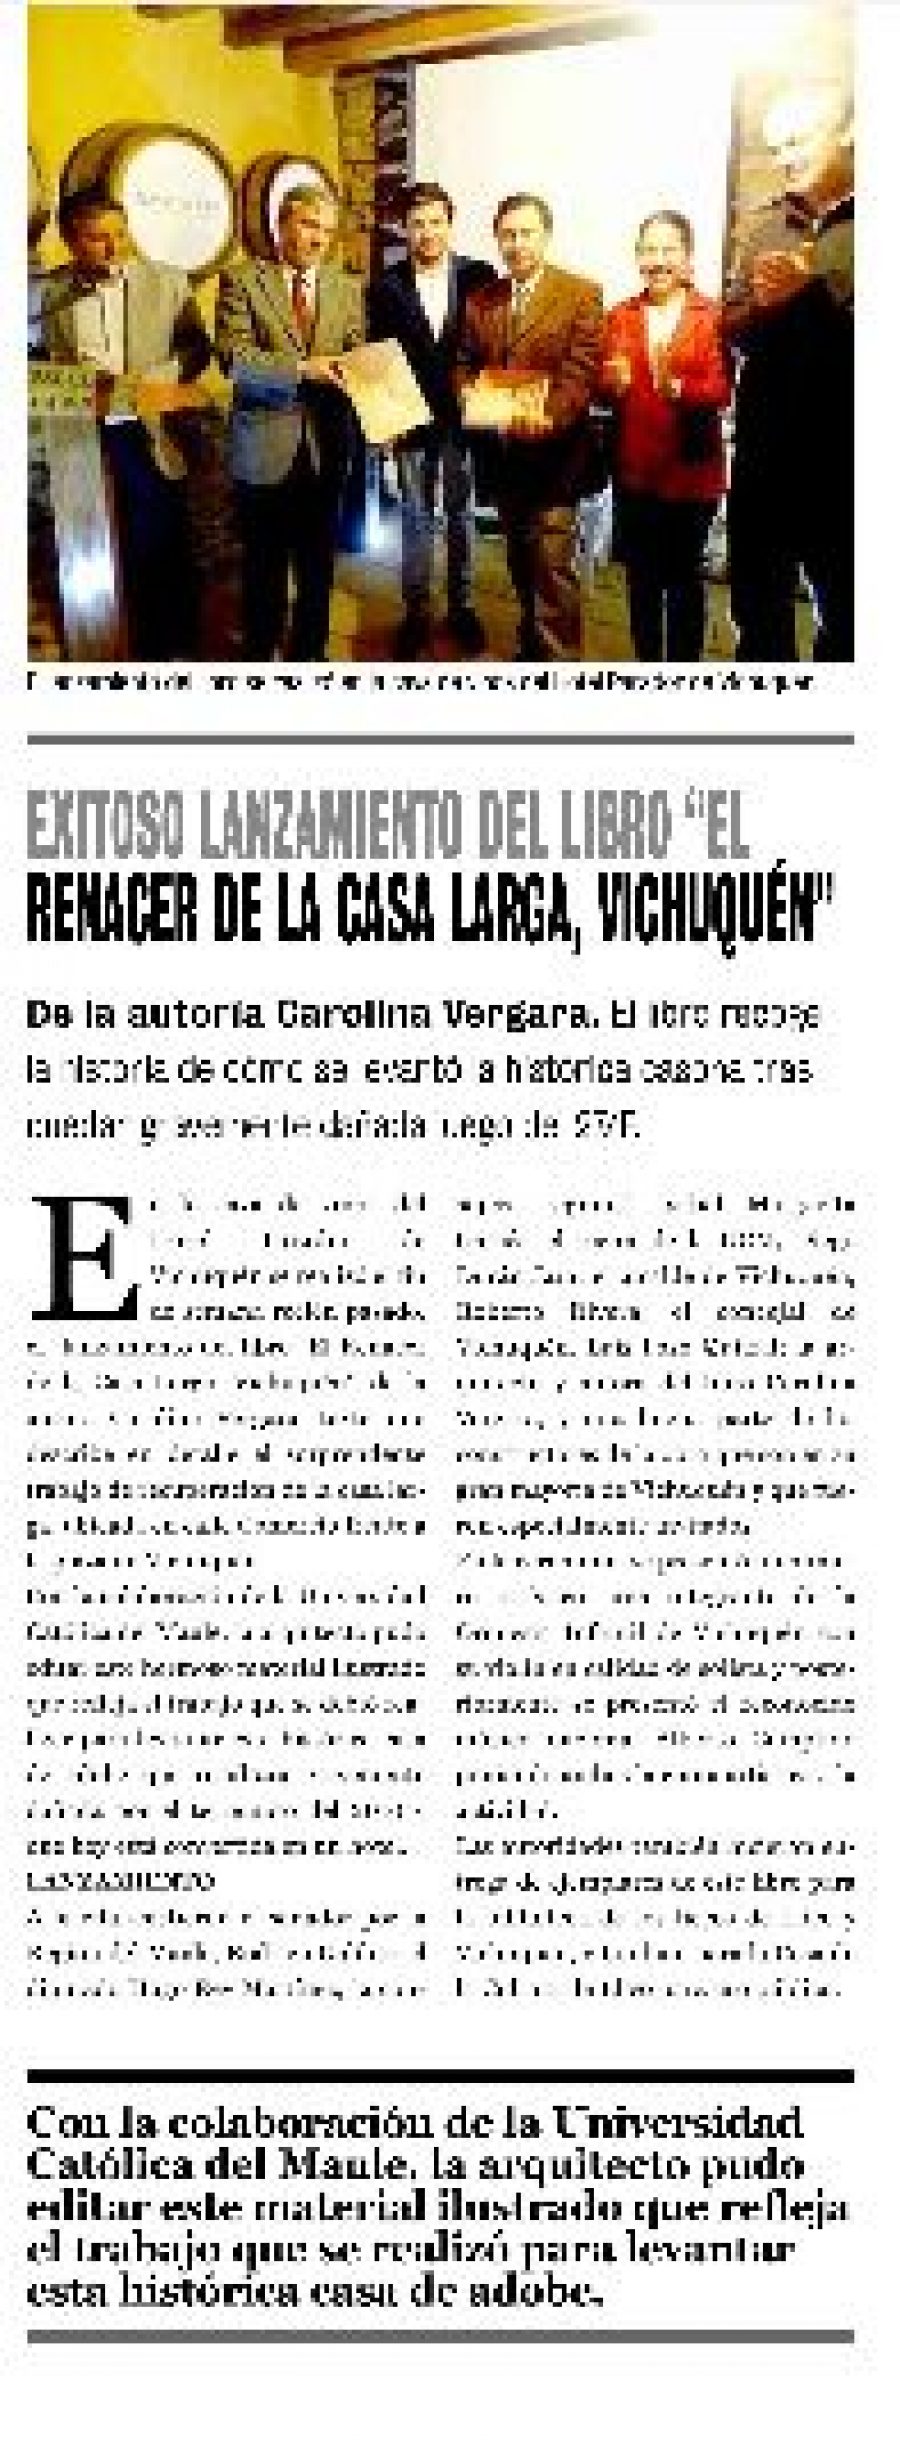 20 de marzo en Diario La Prensa: “Exitoso lanzamiento del libro “El renacer de la casa larga, Vichuquén”